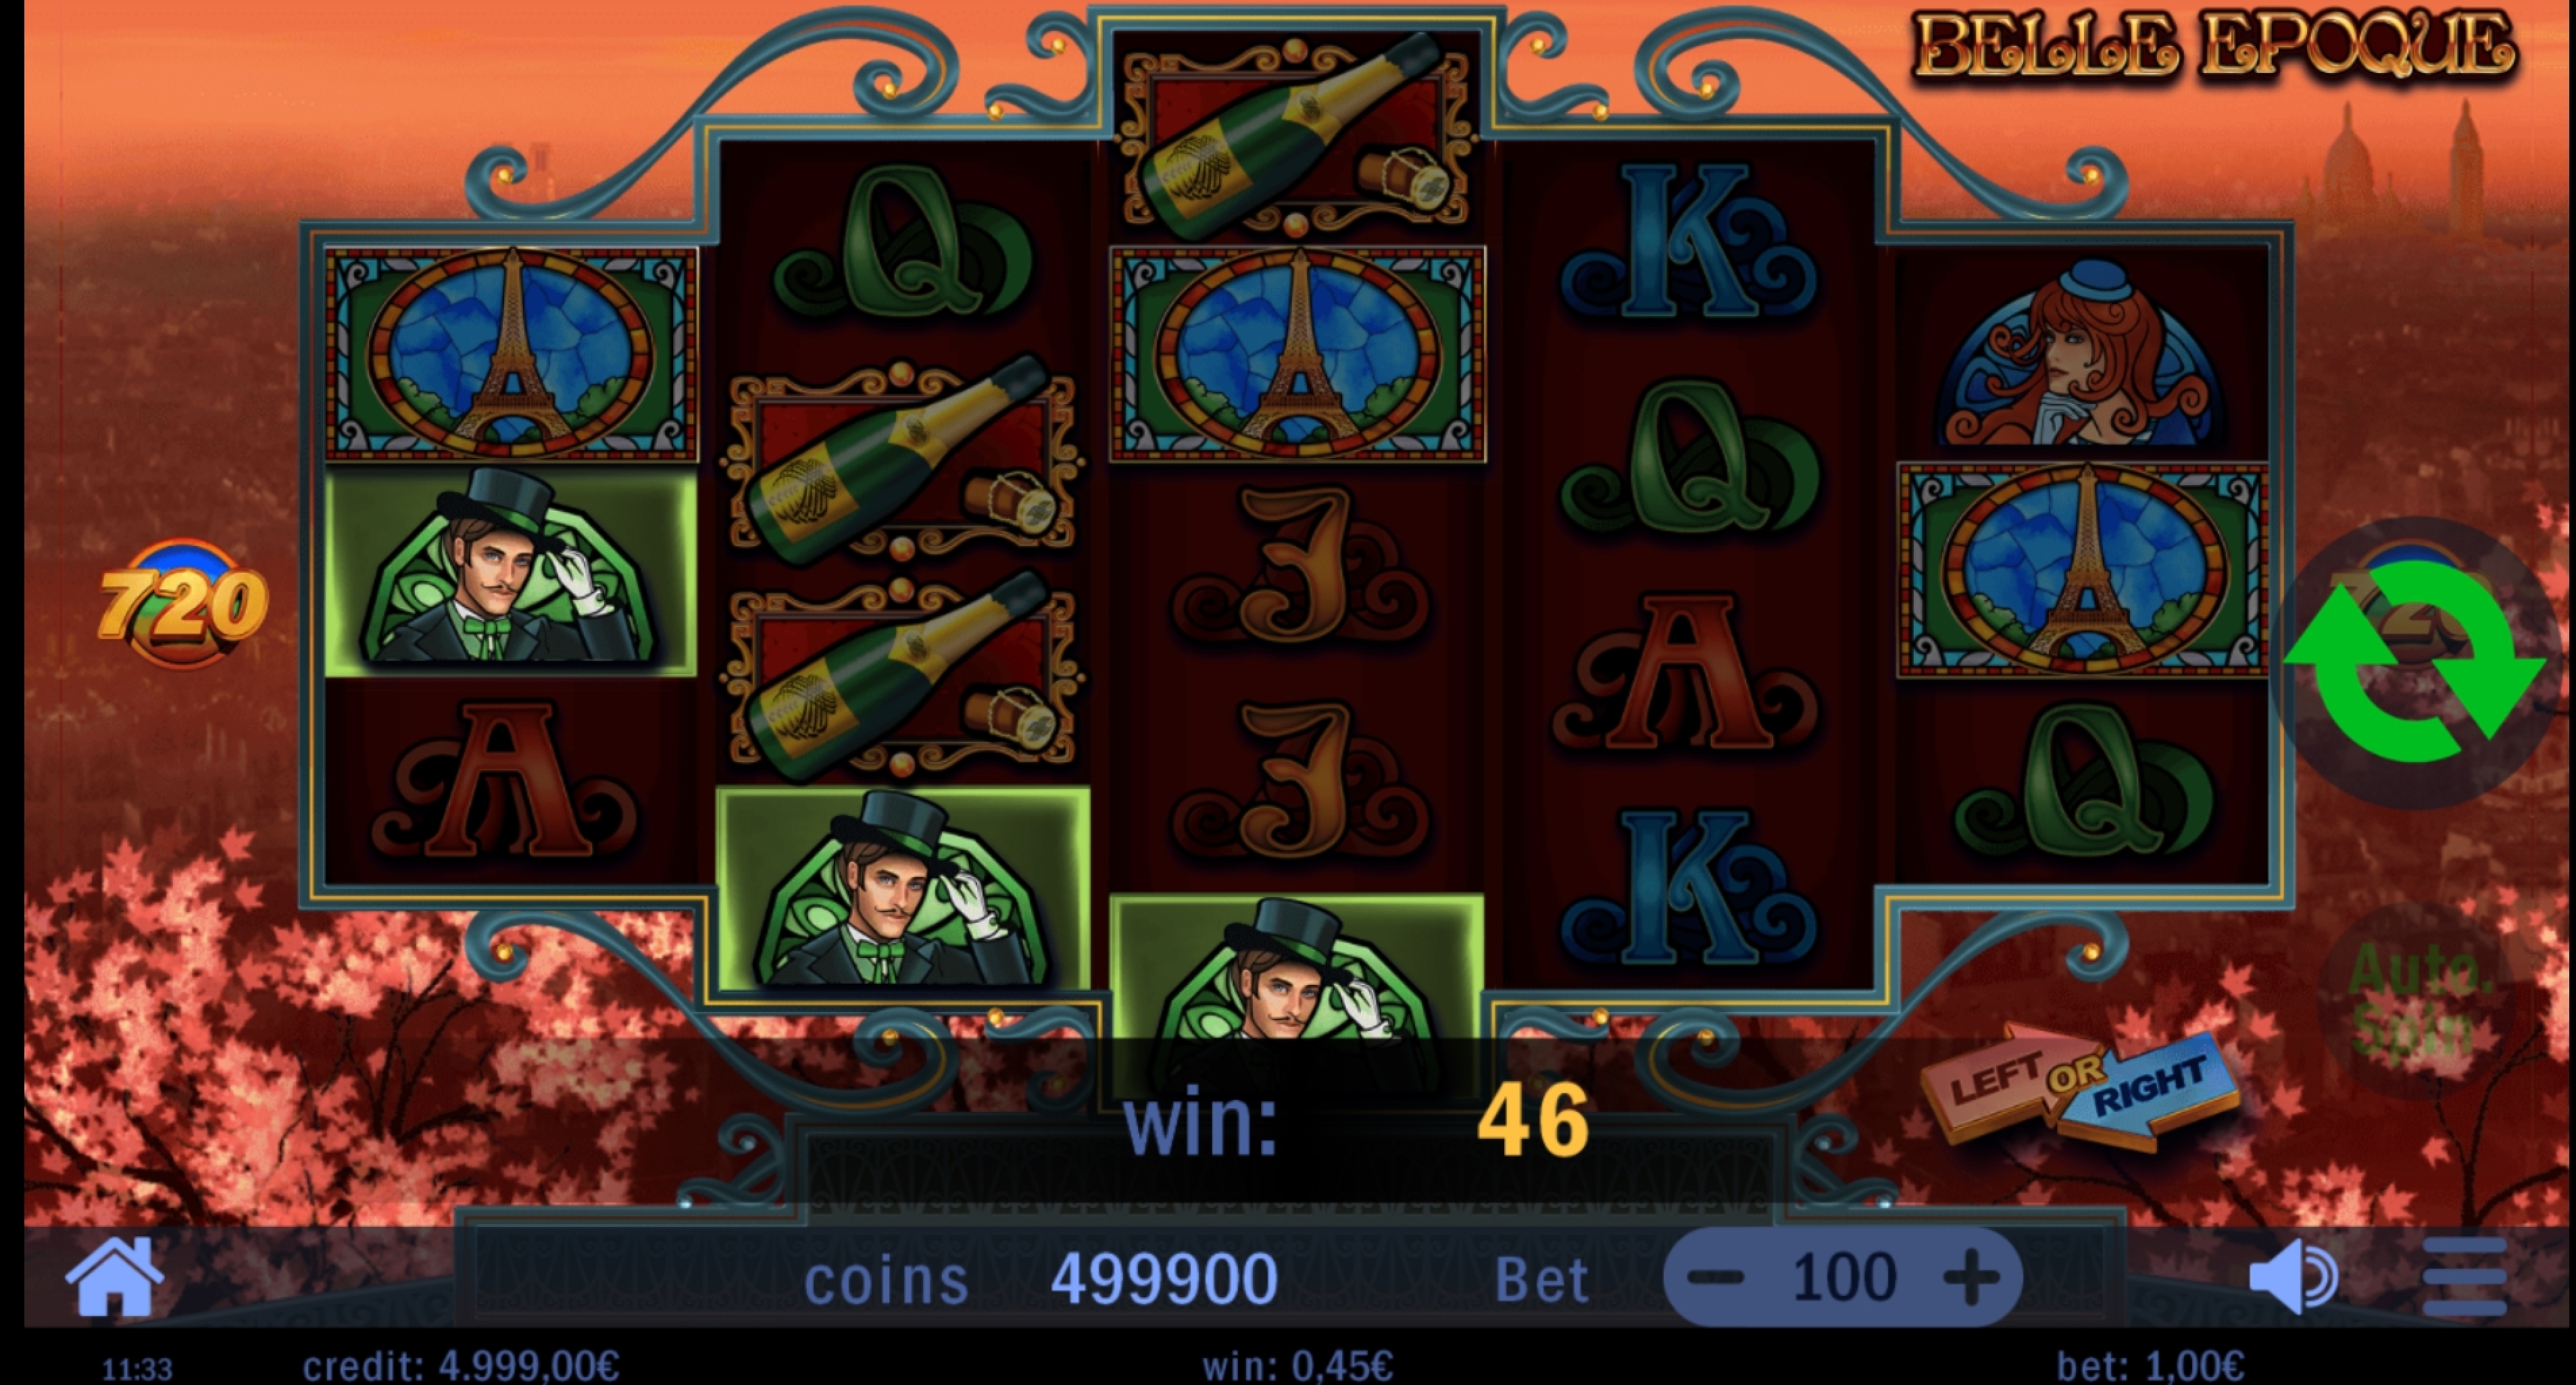 Win Money in Belle Epoque Free Slot Game by Swintt